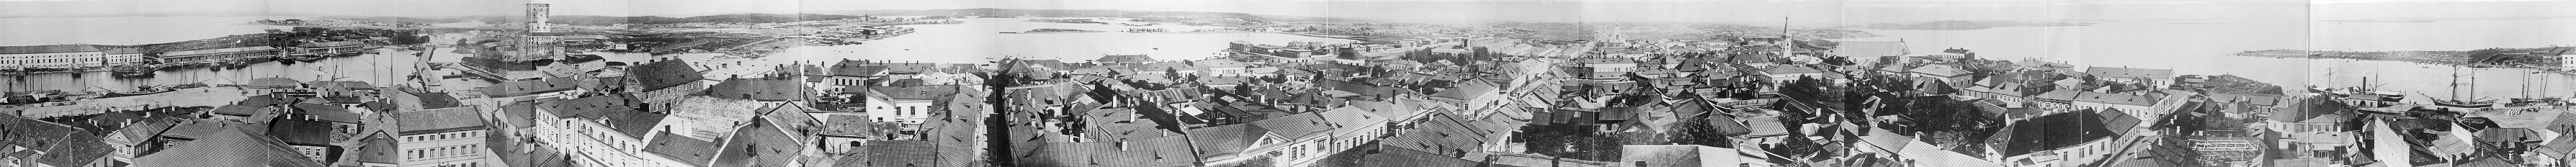 Выборг панорама 1865г Зейферта-.jpg